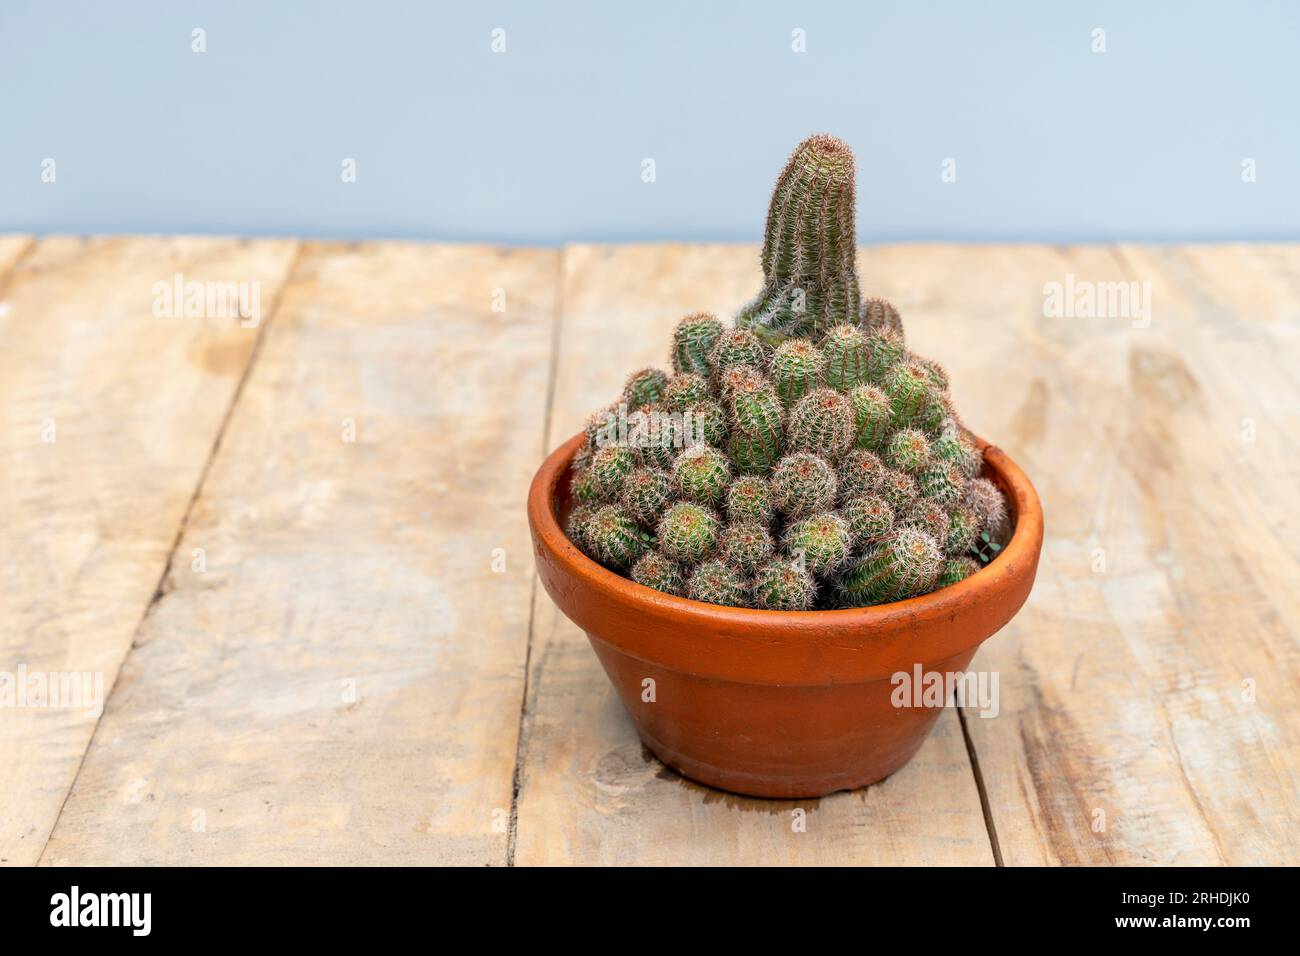 Echinocereus pectinatus beautiful cactus in a clay pot Stock Photo